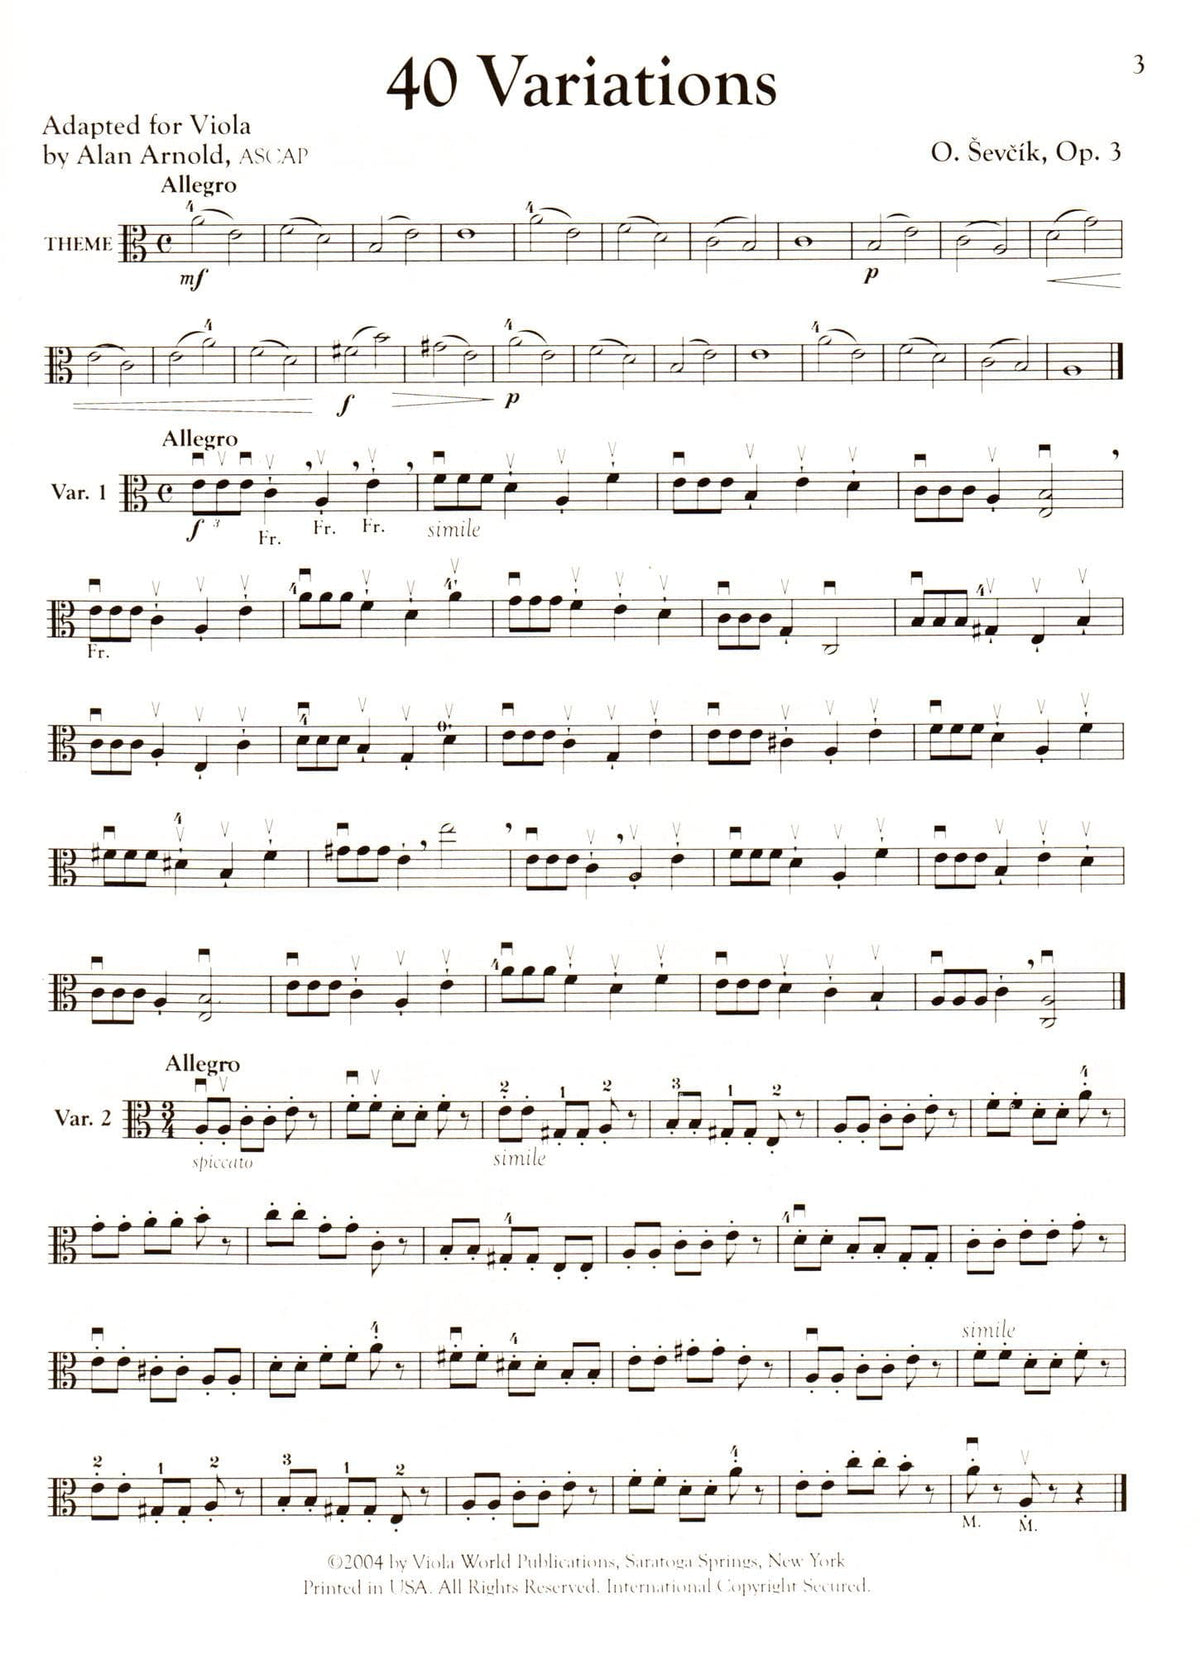 Sevcik, Otakar - Forty Variations for Viola Op 3 - Edited by Alan Arnold - Viola World